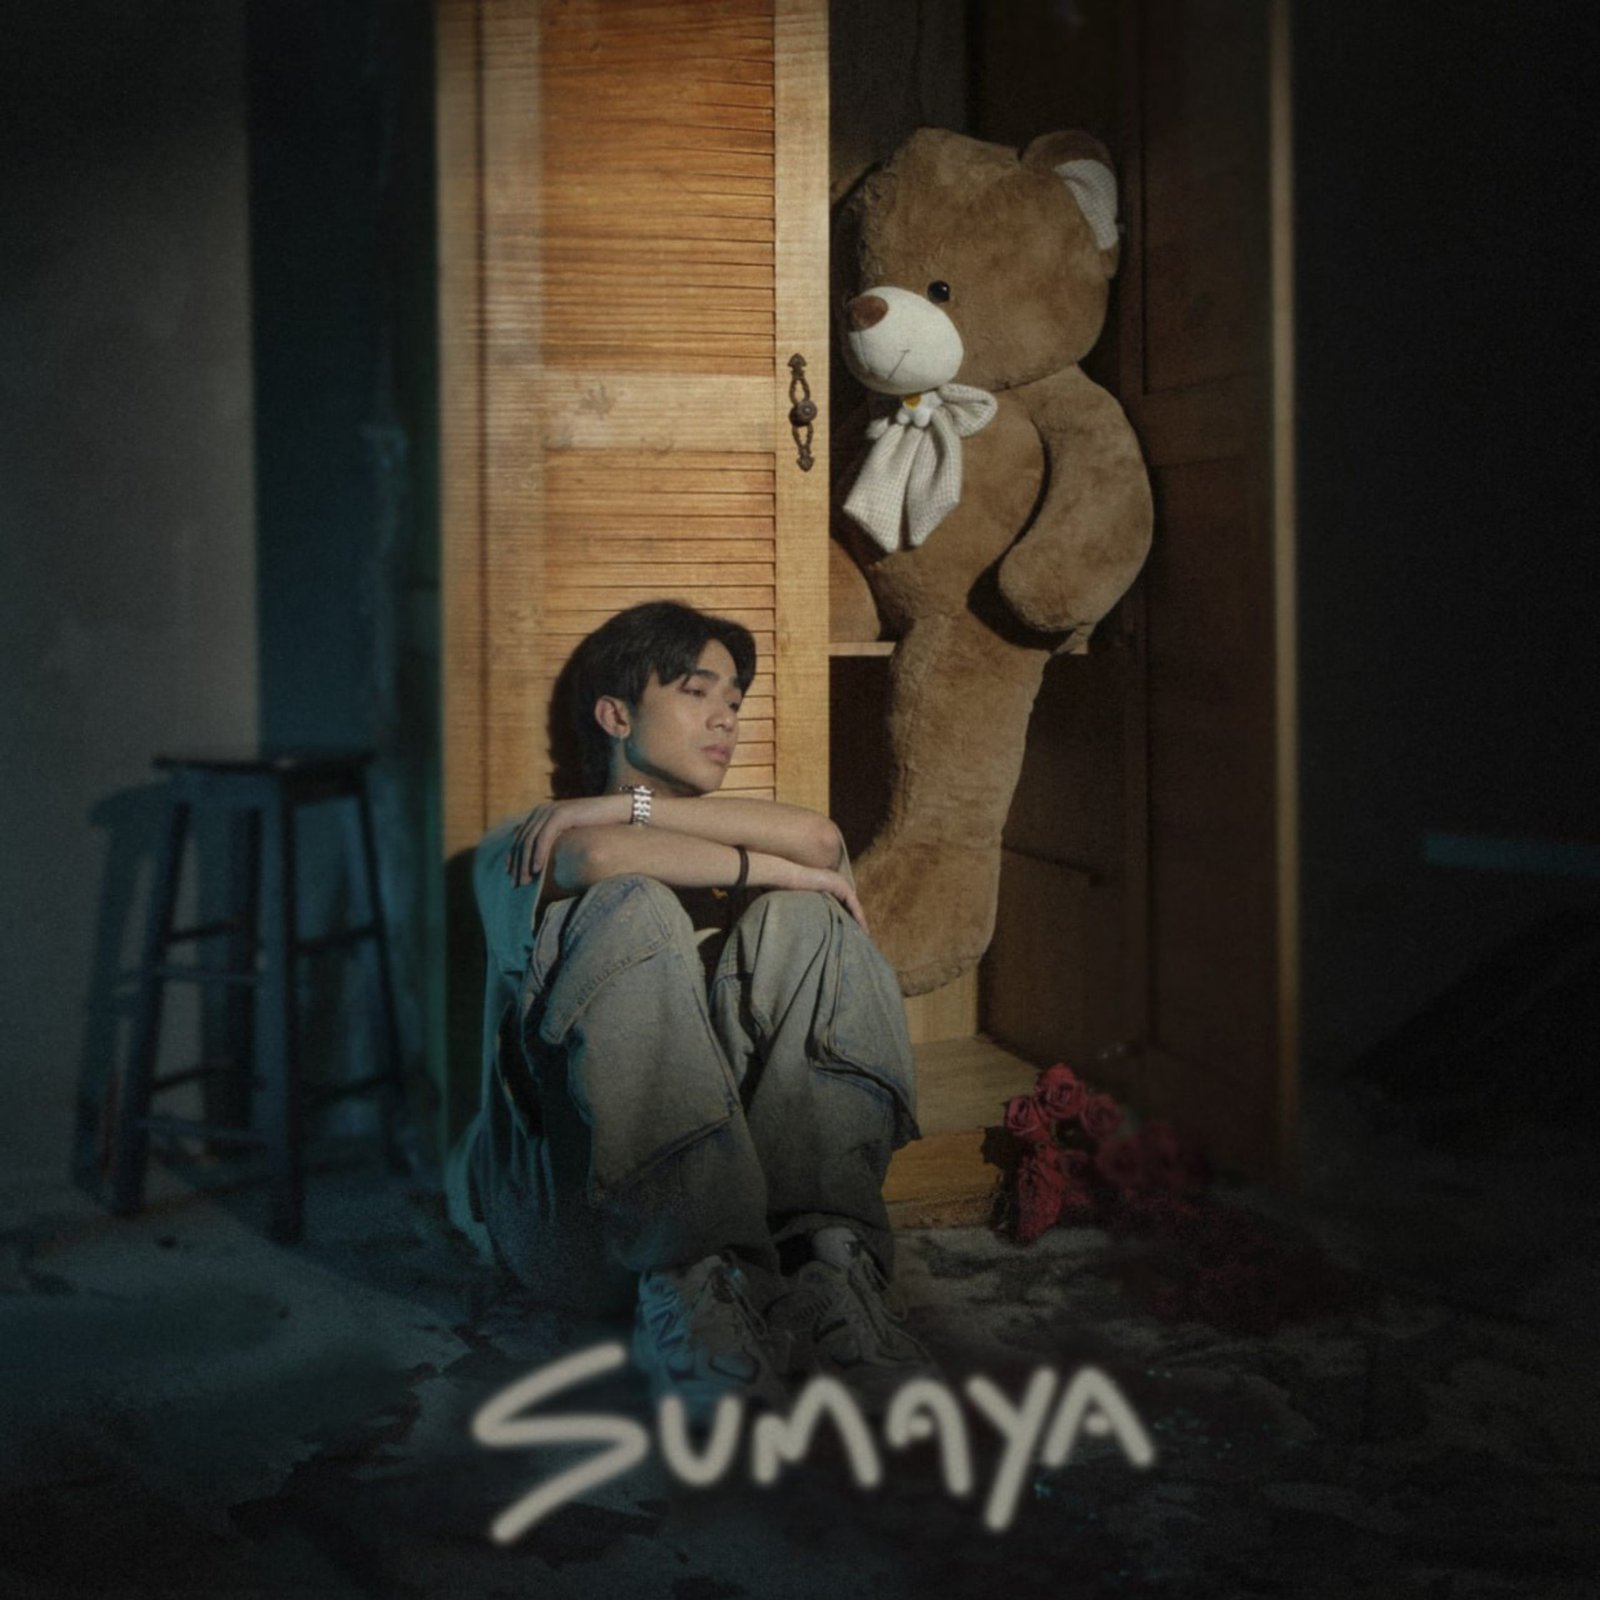 SB19s Josh Cullen releases the heartbreaking RB song Sumaya